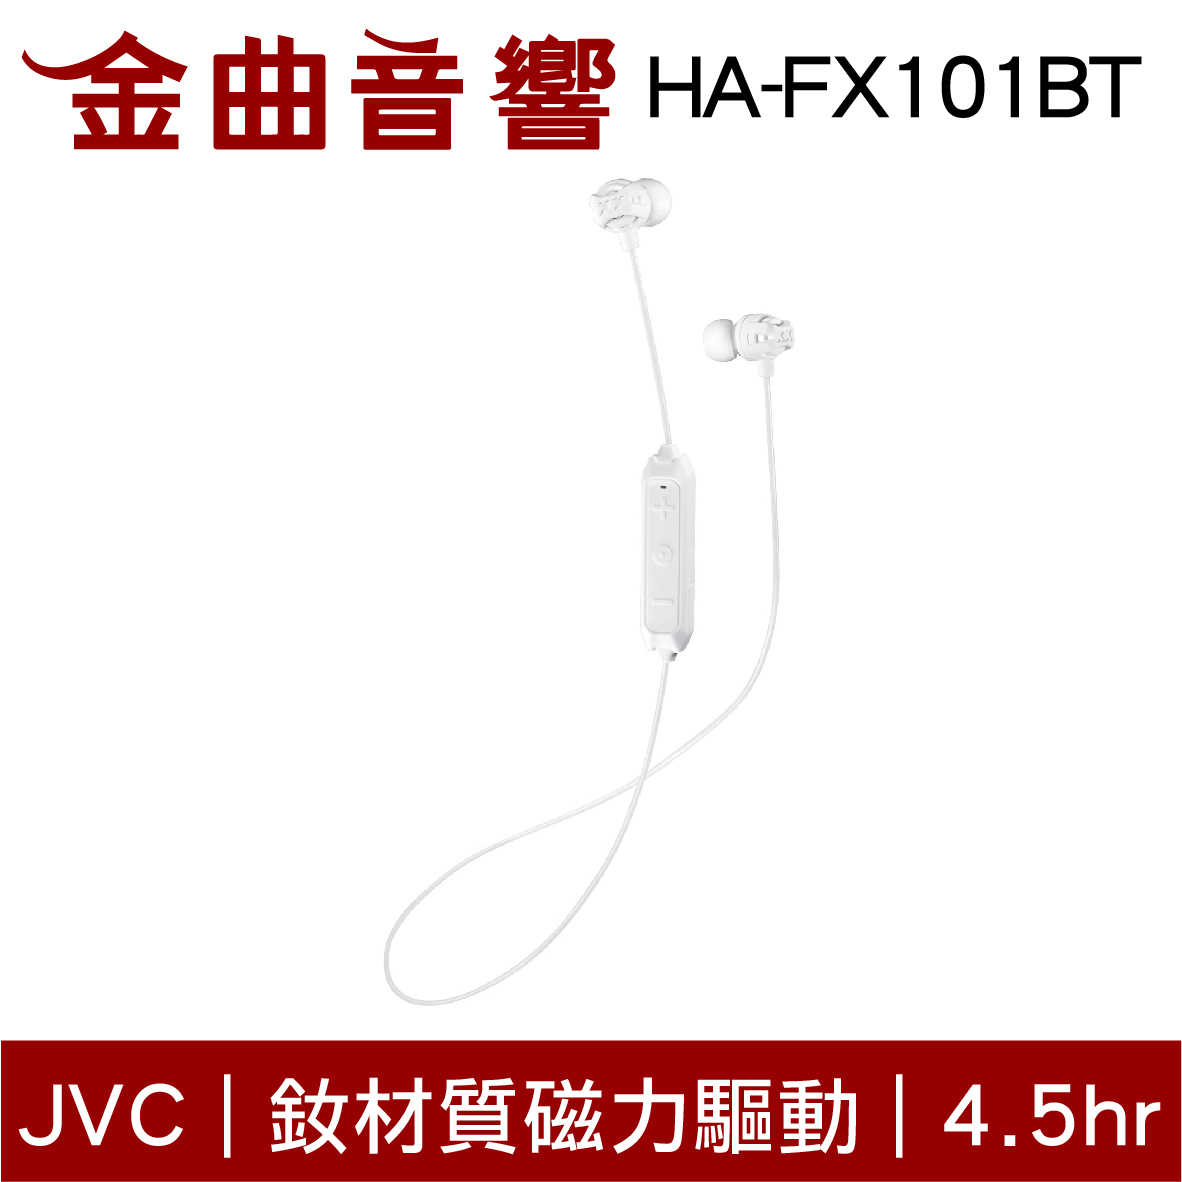 JVC HA-FX101BT 紅色 釹材質磁力驅動 藍芽4.1 無線耳機 | 金曲音響